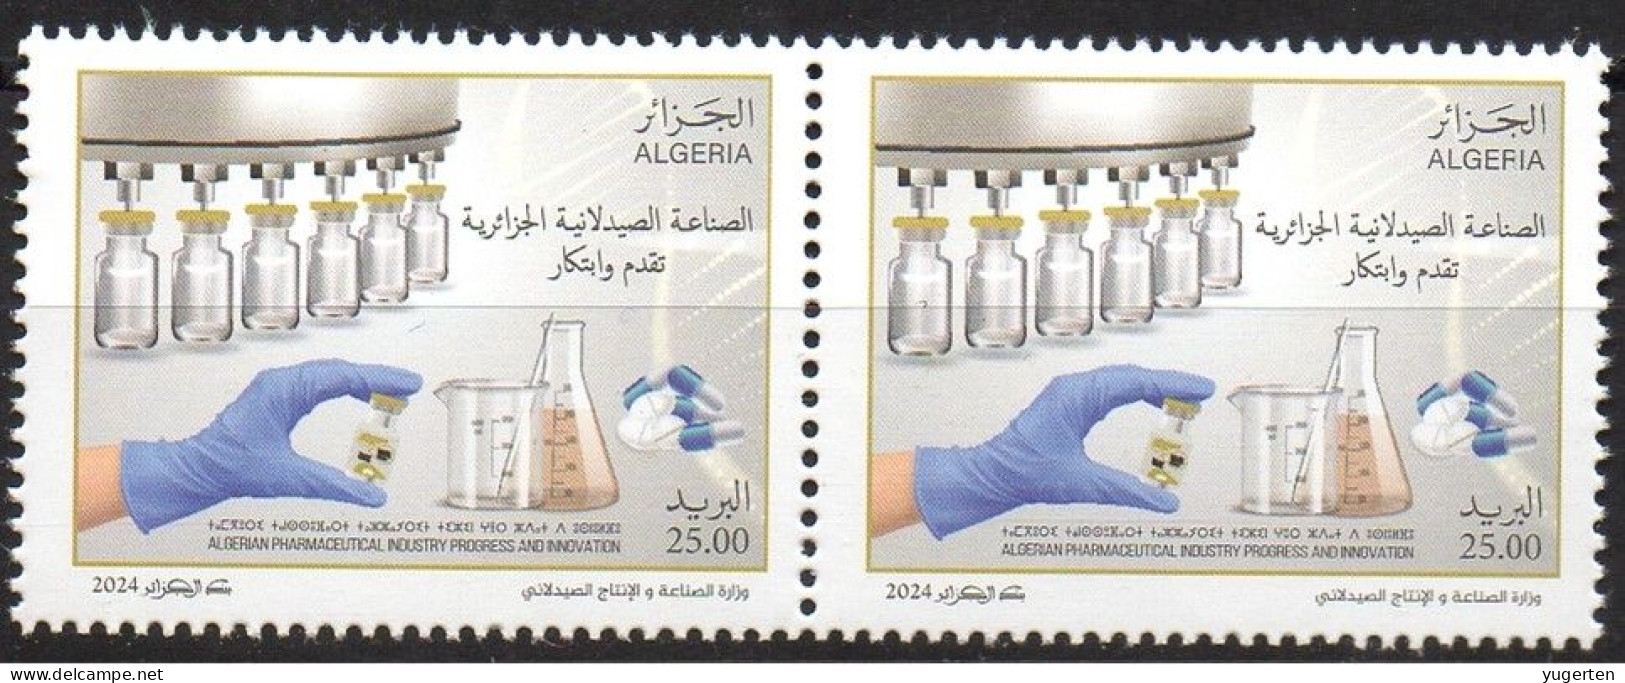 ALGERIE ALGERIA 2024 - 2v - MNH - Industrie Pharmaceutique - Pharmaceutical Industry - Pharmacy - Medicines Pharmacie - Pharmacie